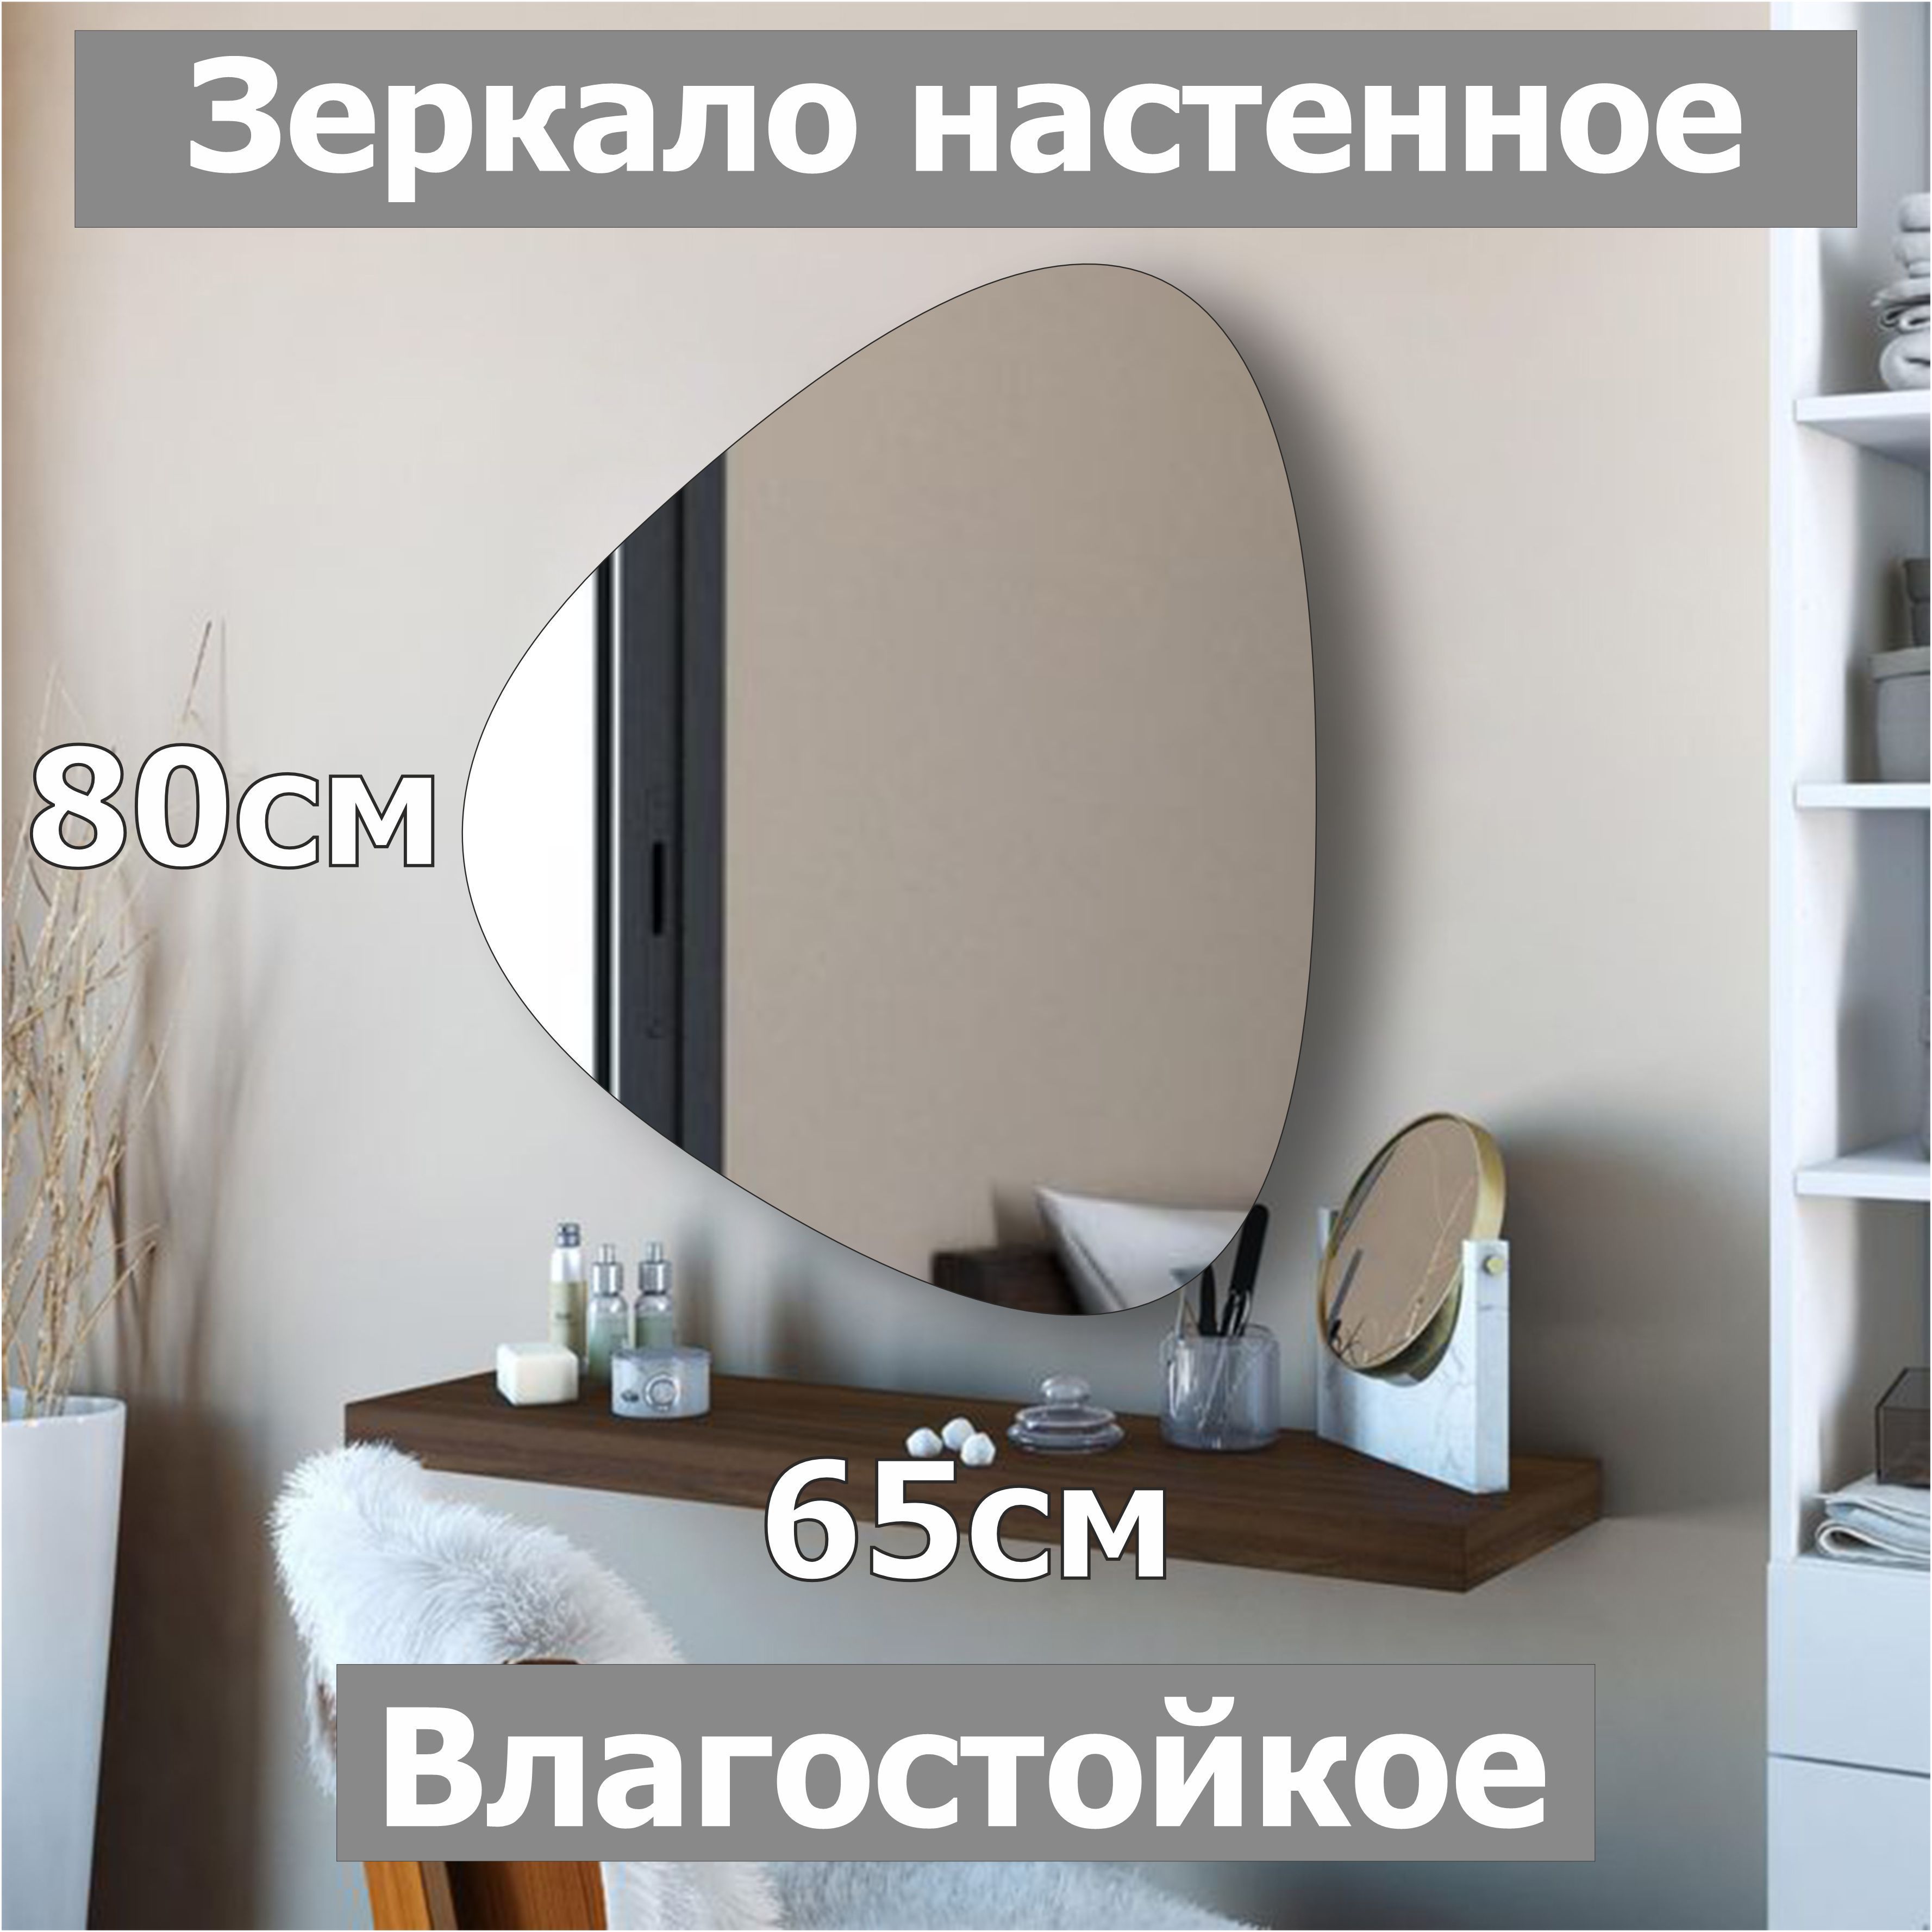 Зеркало настенное фигурное Медиатор, 80х65см, асимметричное, интерьерное, влагостойкое